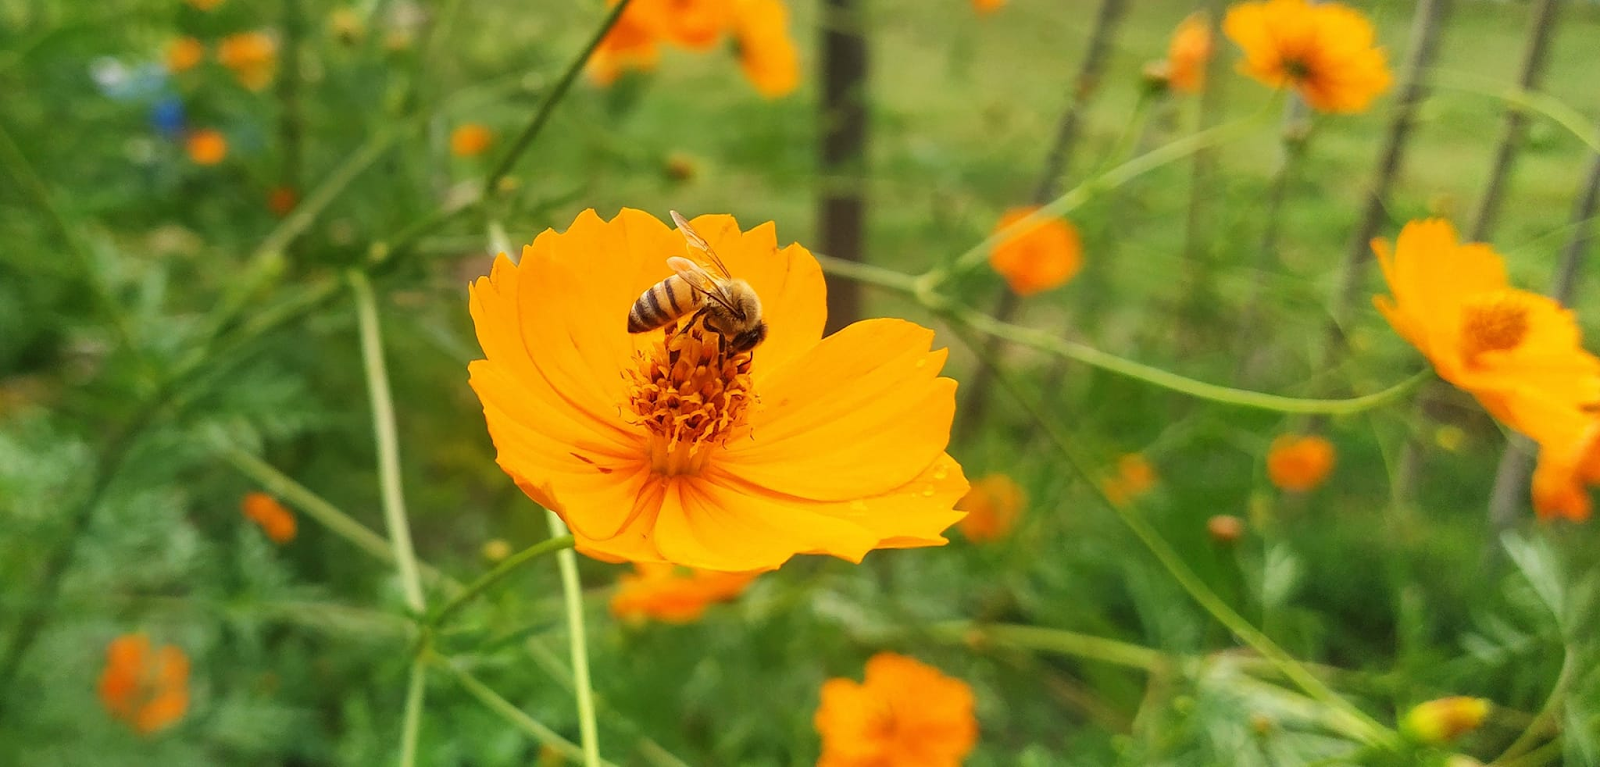 flor do campo cor de laranja com uma abelha